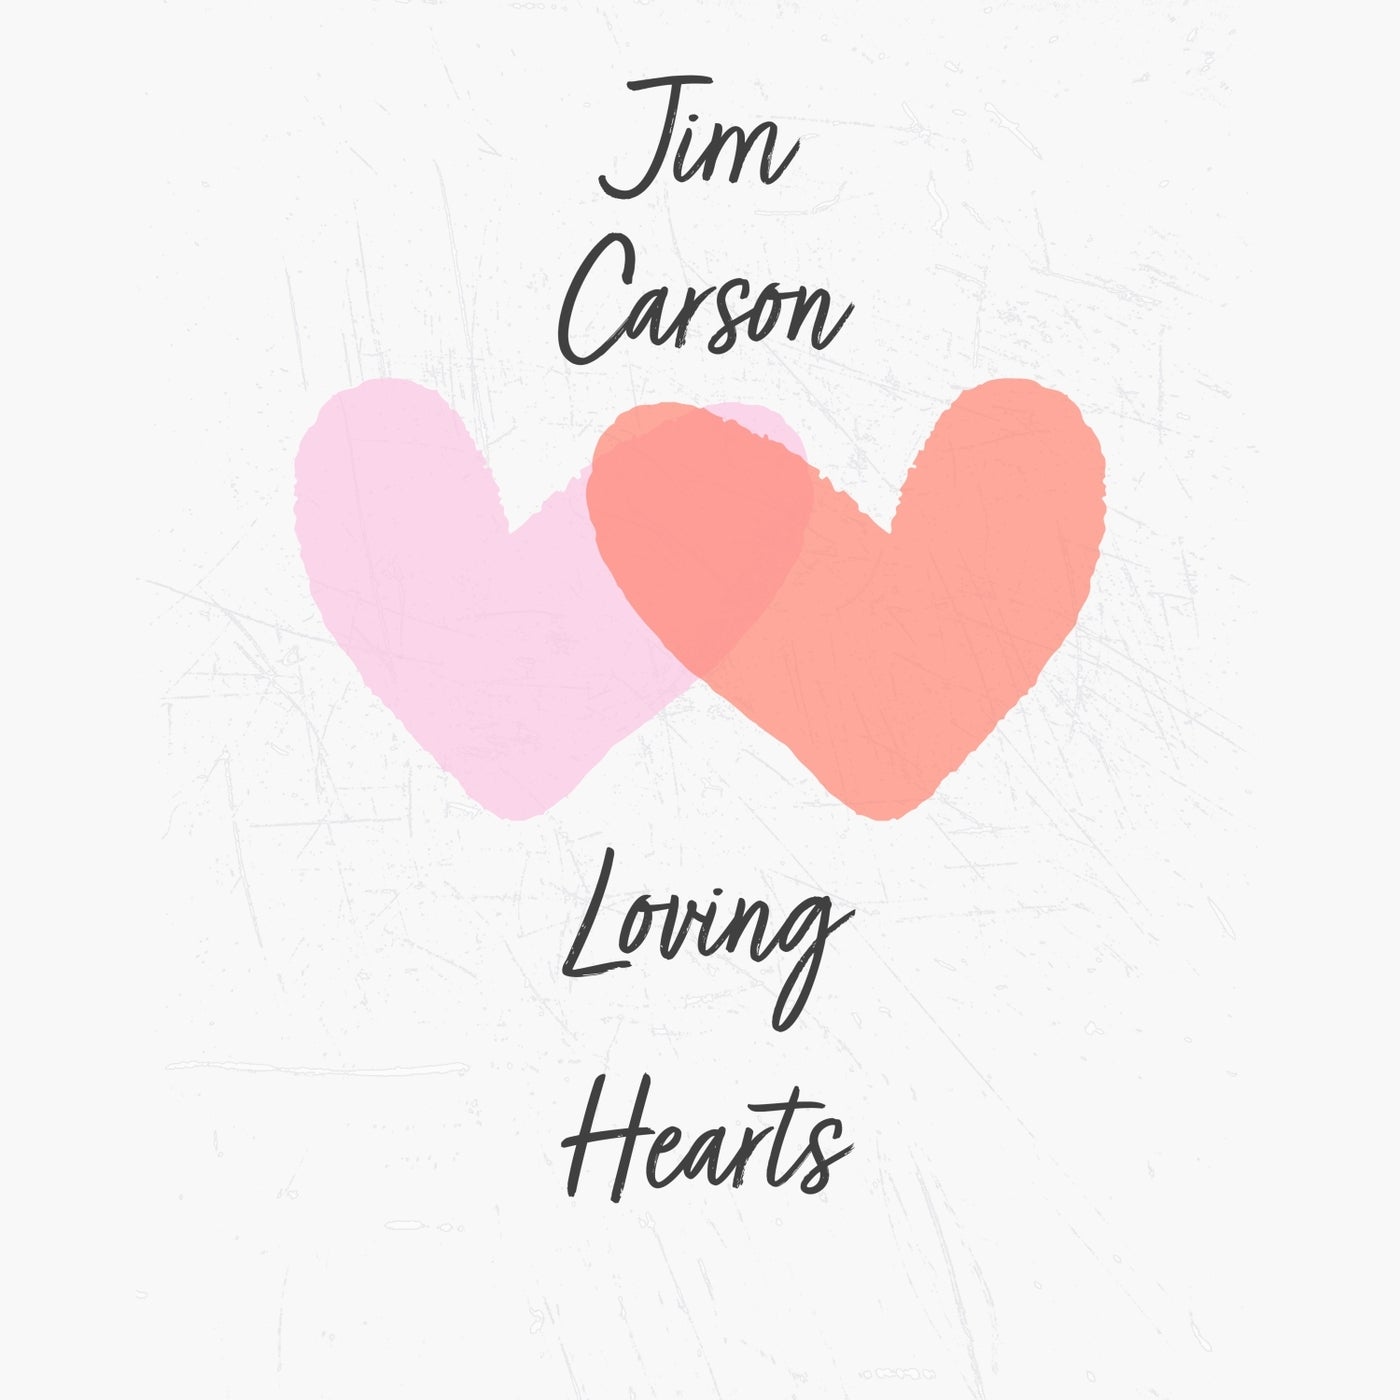 Loving Hearts